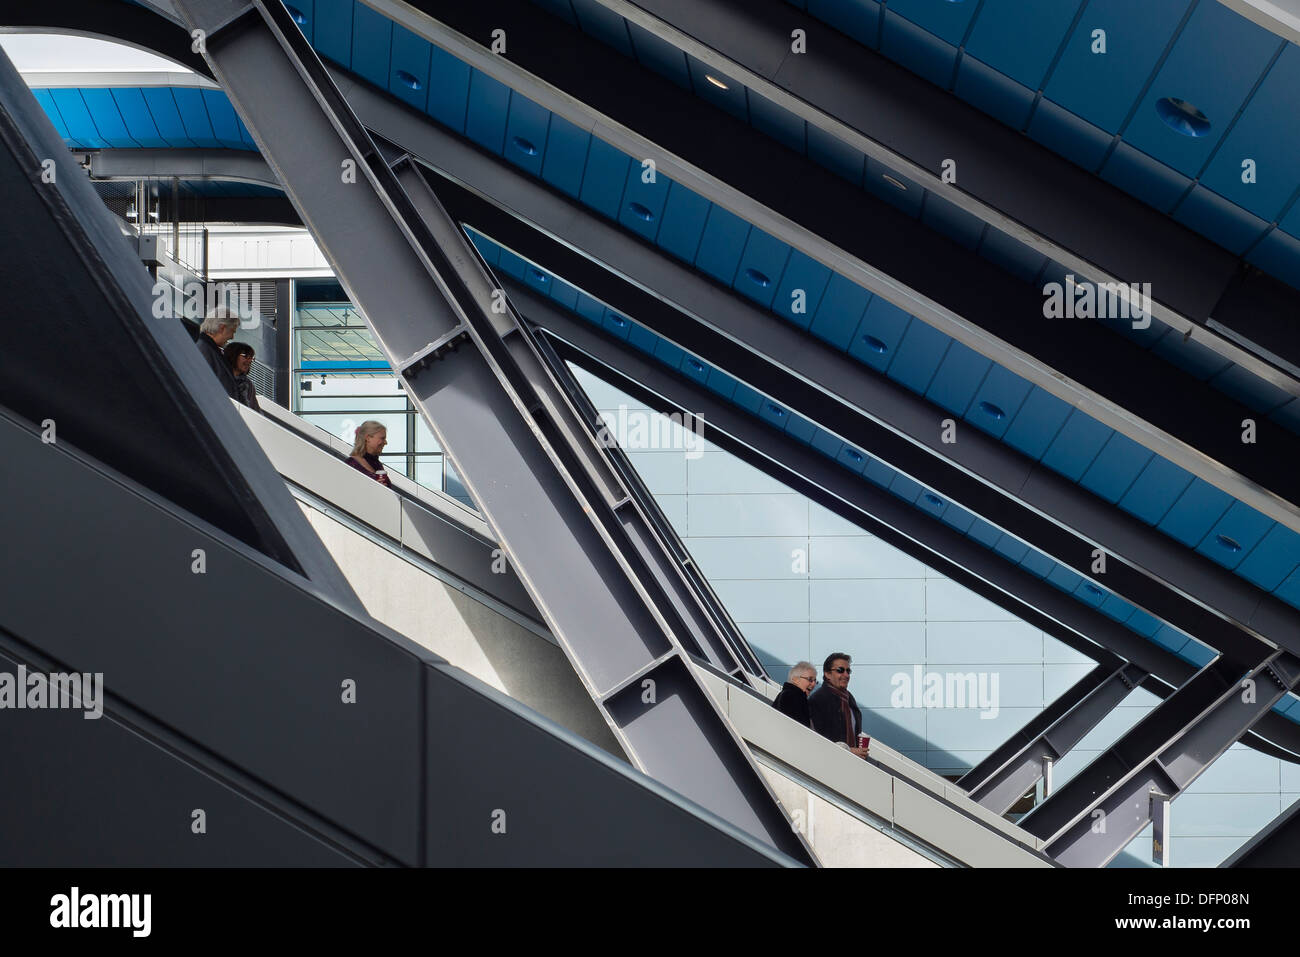 La lettura di stazione ferroviaria, Reading, Regno Unito. Architetto: Grimshaw, 2015. Dettaglio del telaio in acciaio con scale mobili. Foto Stock